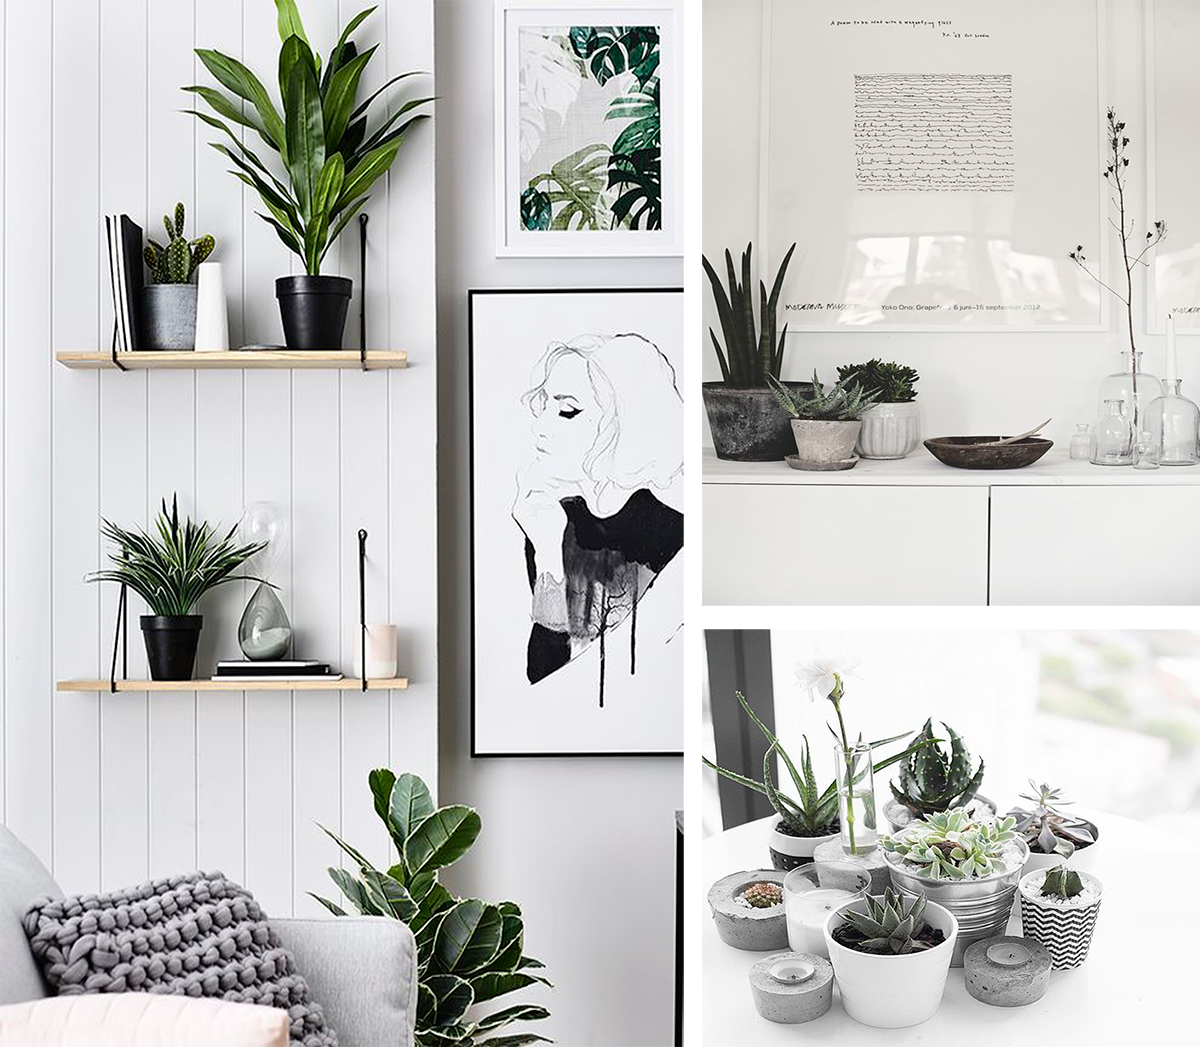 decorar con plantas, plantas, plantas estilo nordico, decoracion nordica, blanco y negro, 